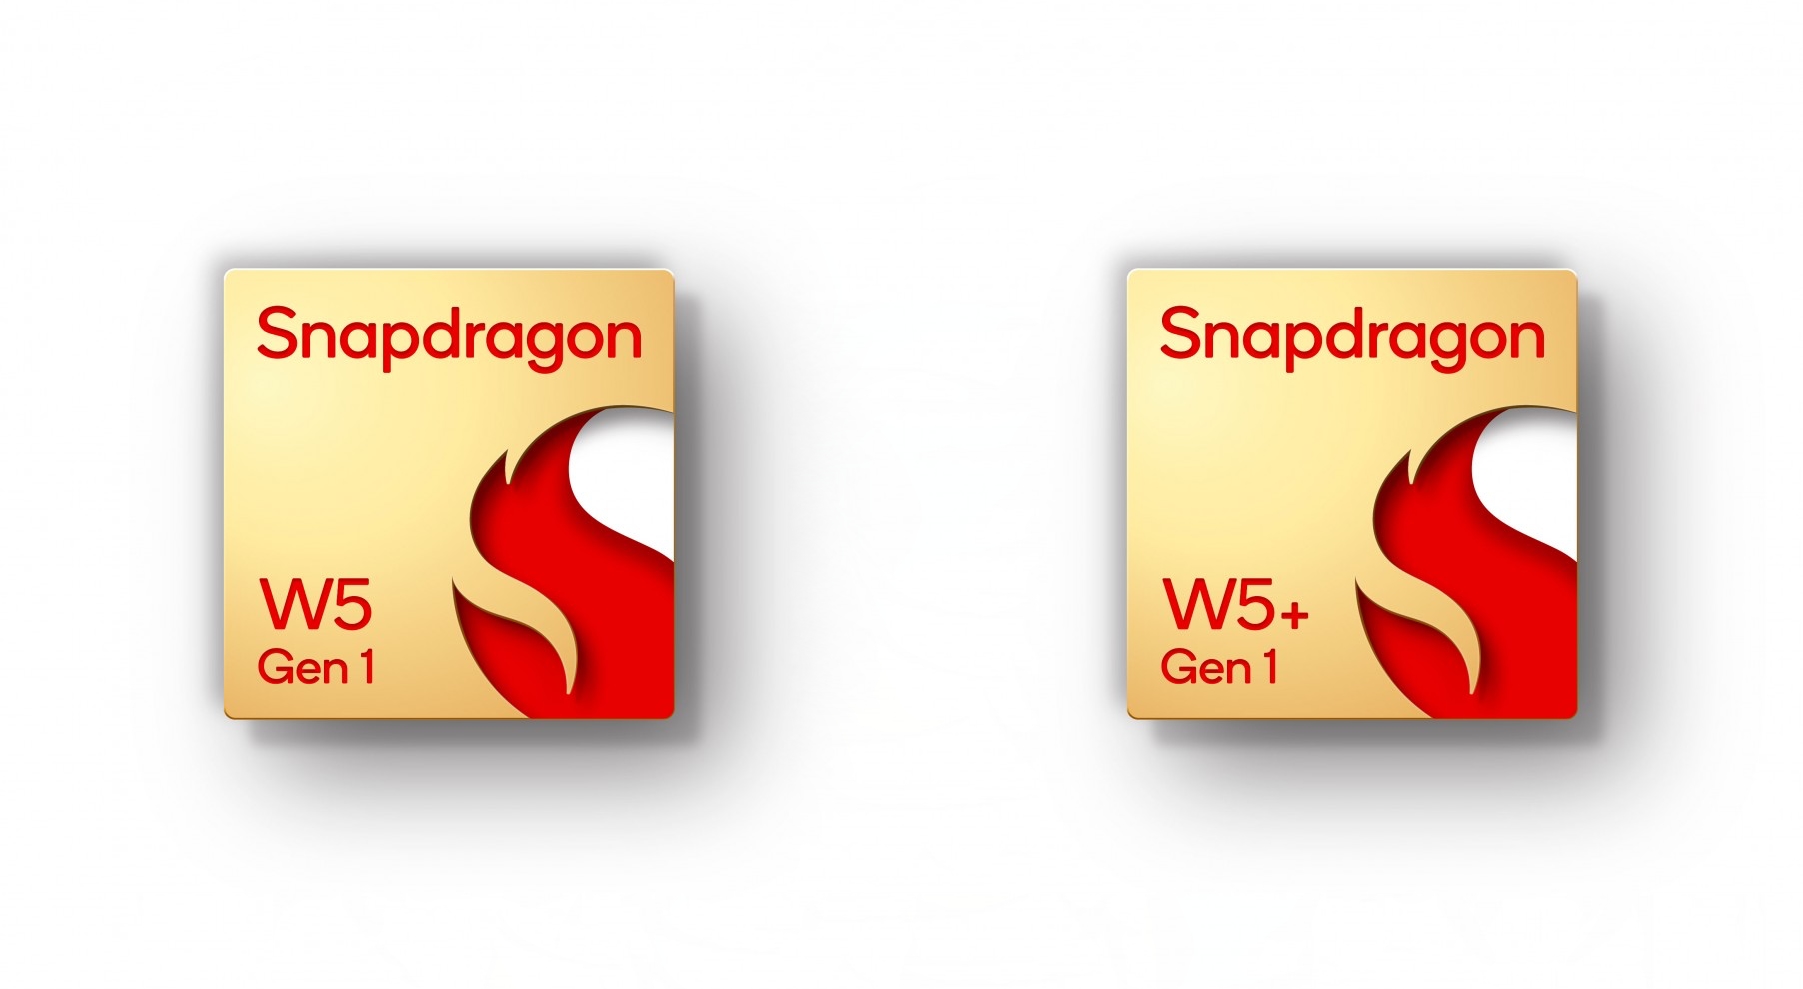 Qualcomm wprowadził Snapdragon W5 Gen 1 i Snapdragon W5 + Gen 1: nowe procesory do smartwatchy